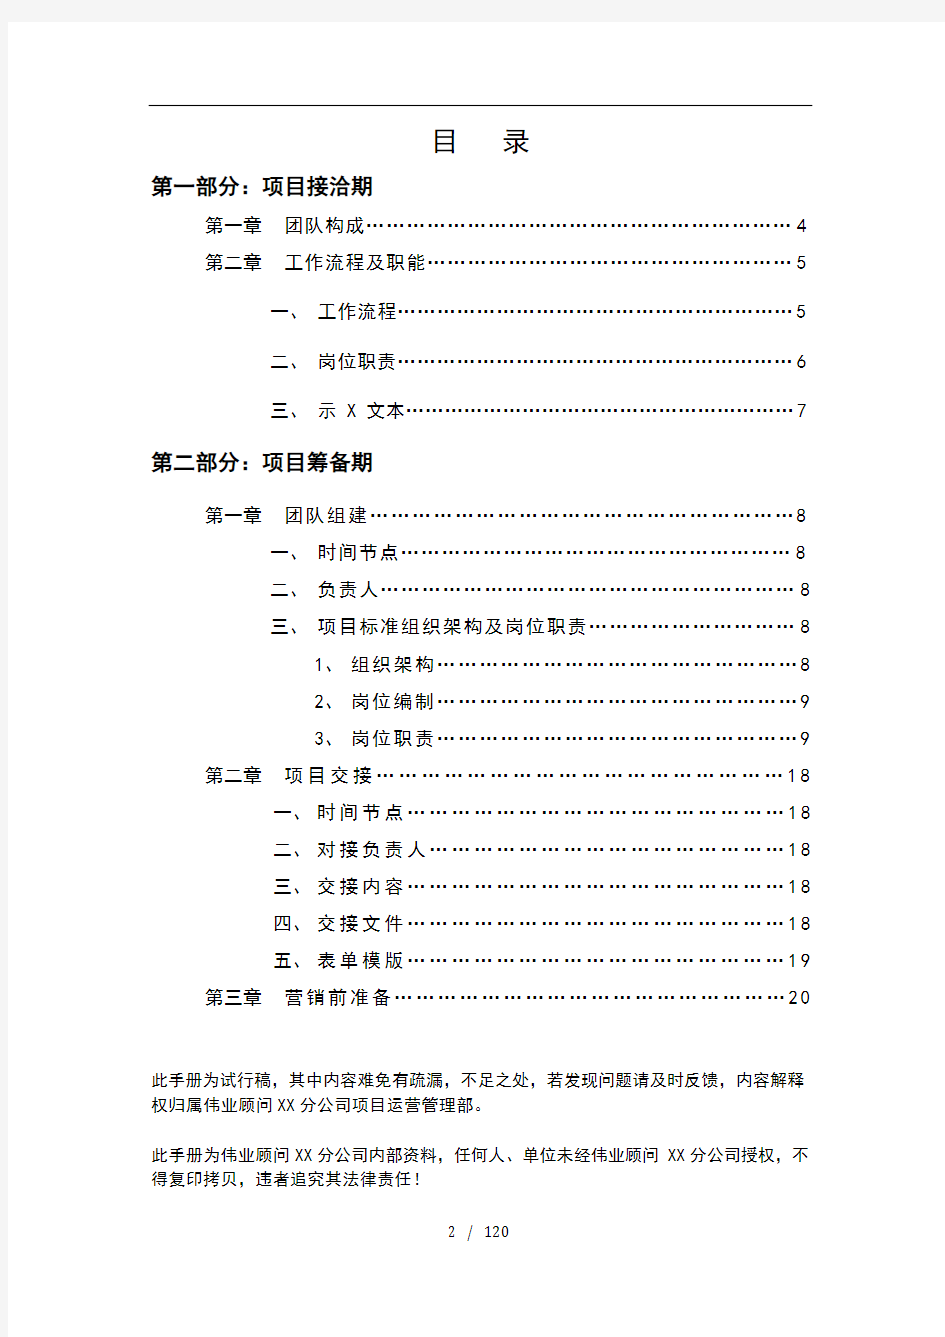 996-伟业顾问公司项目运营管理手册(121)页